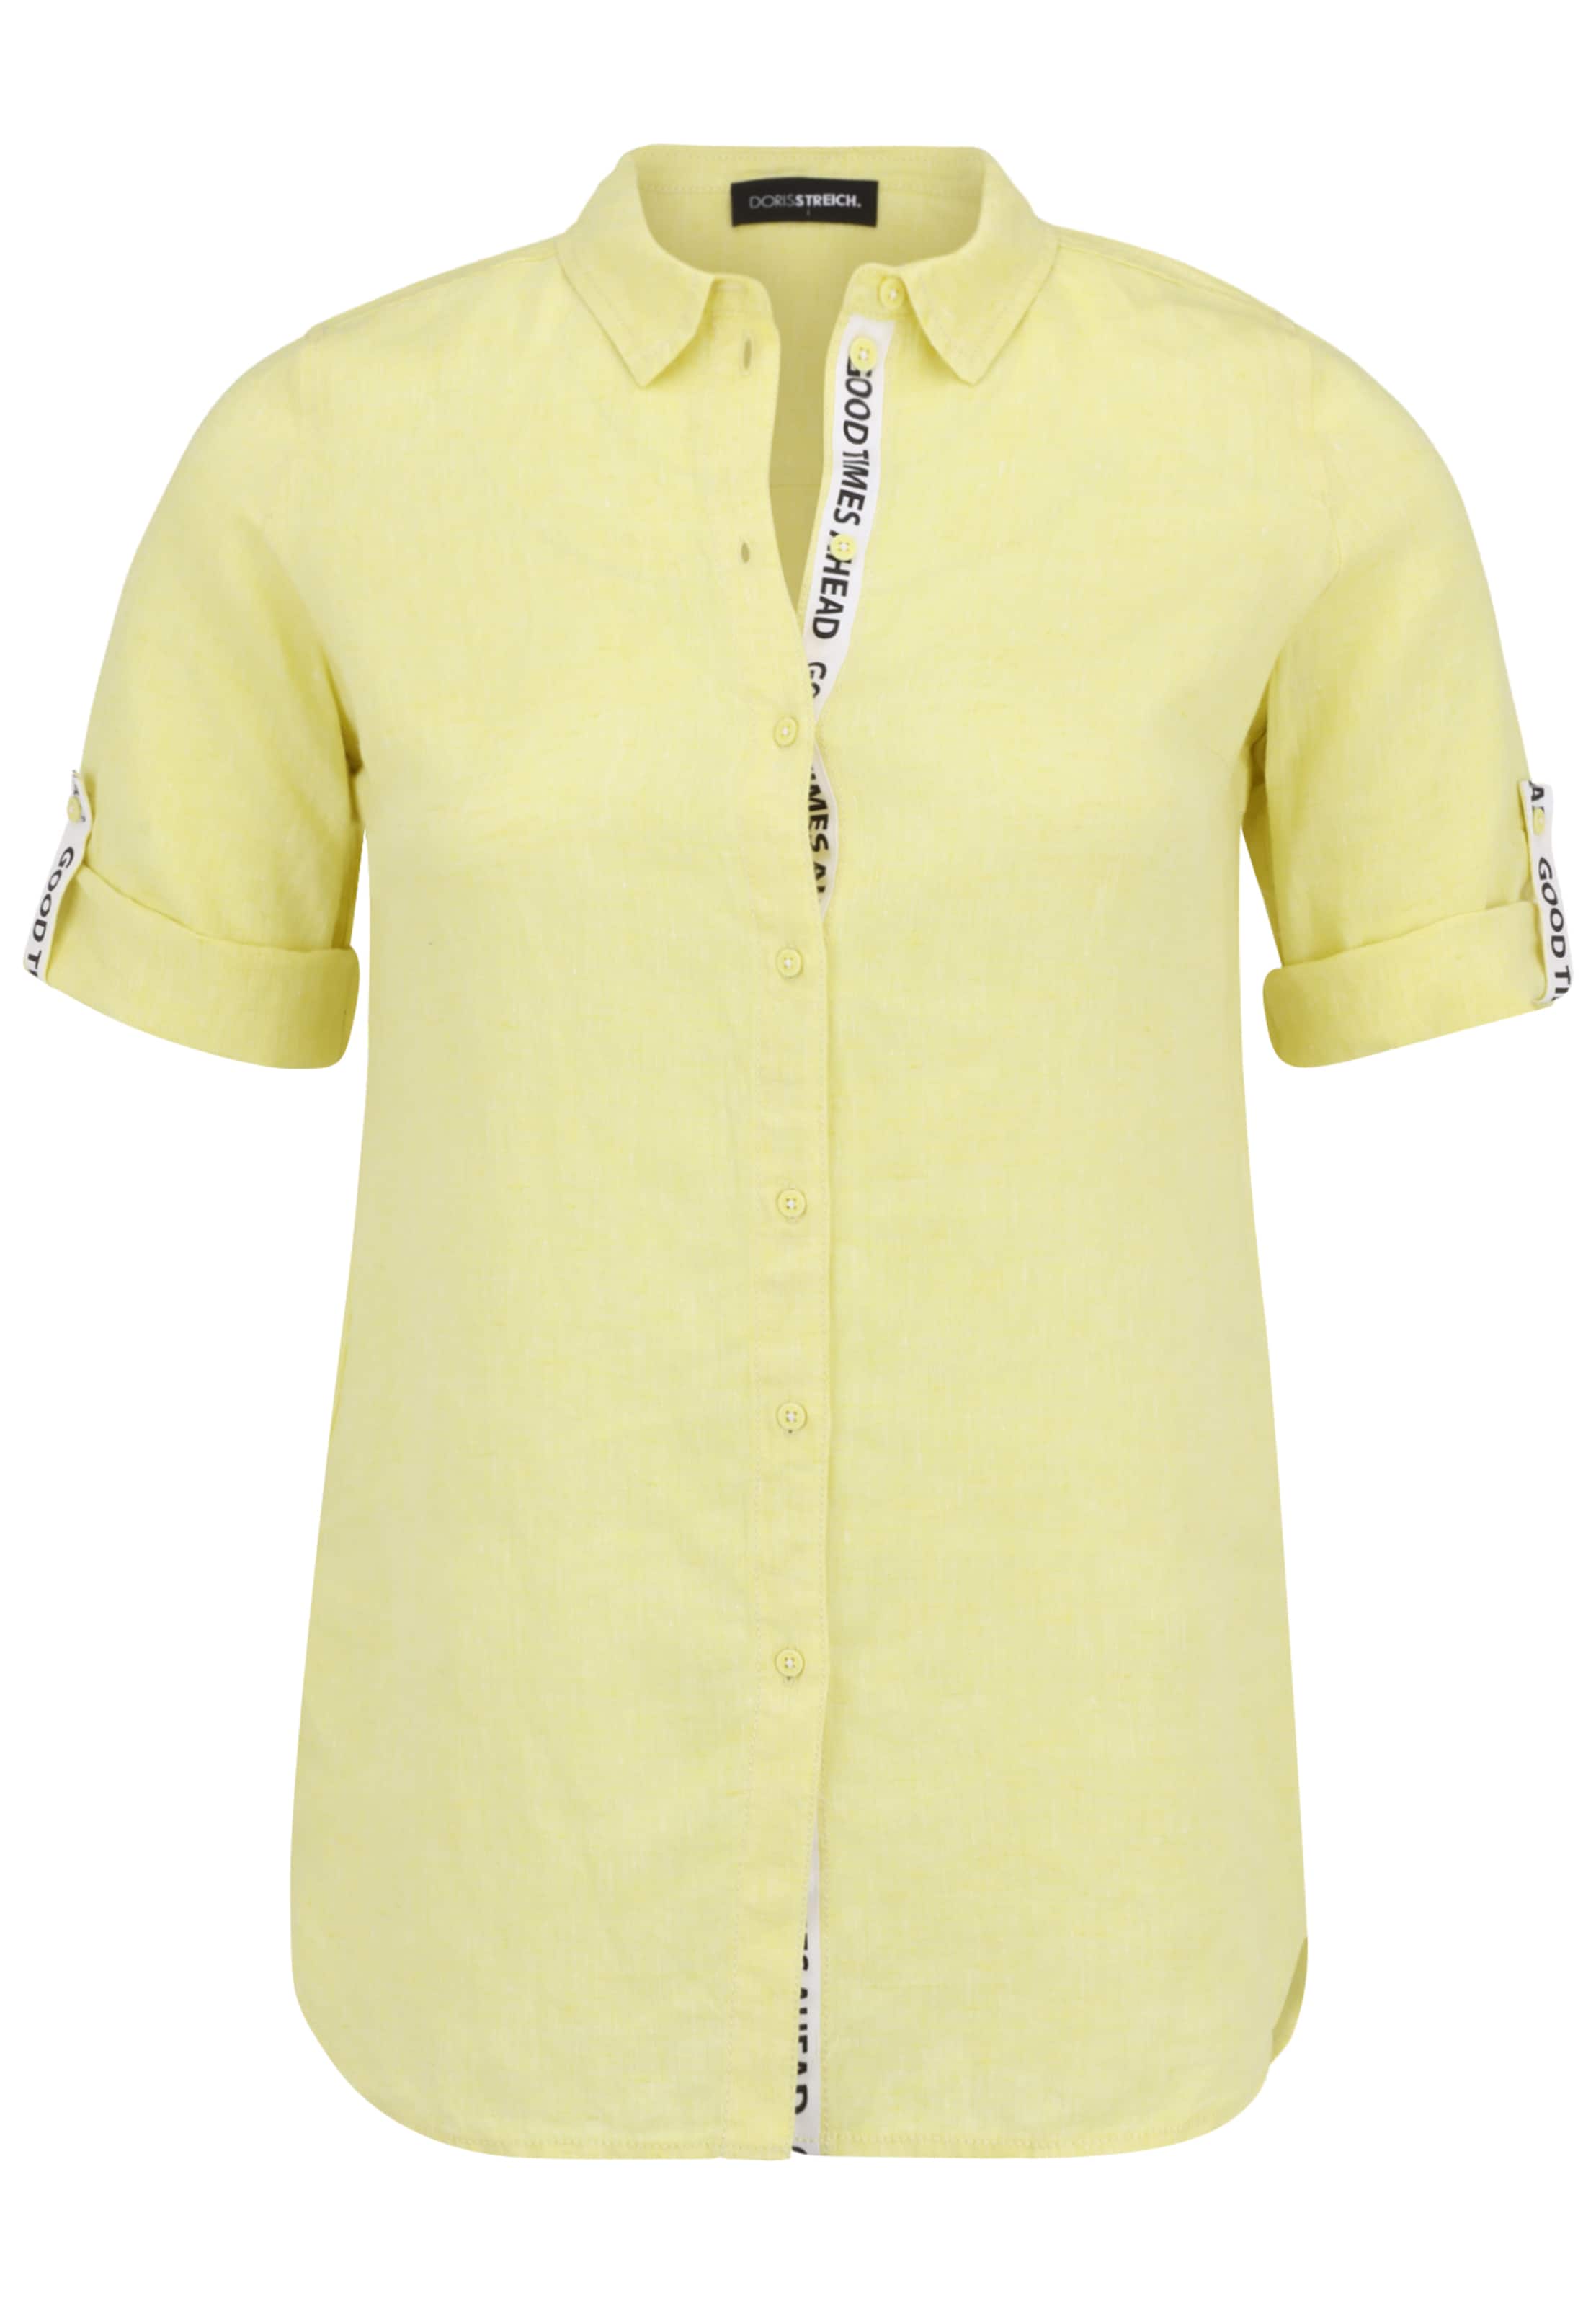 Frauen Große Größen Doris Streich Bluse mit Knopfleiste in Zitrone - SI41033